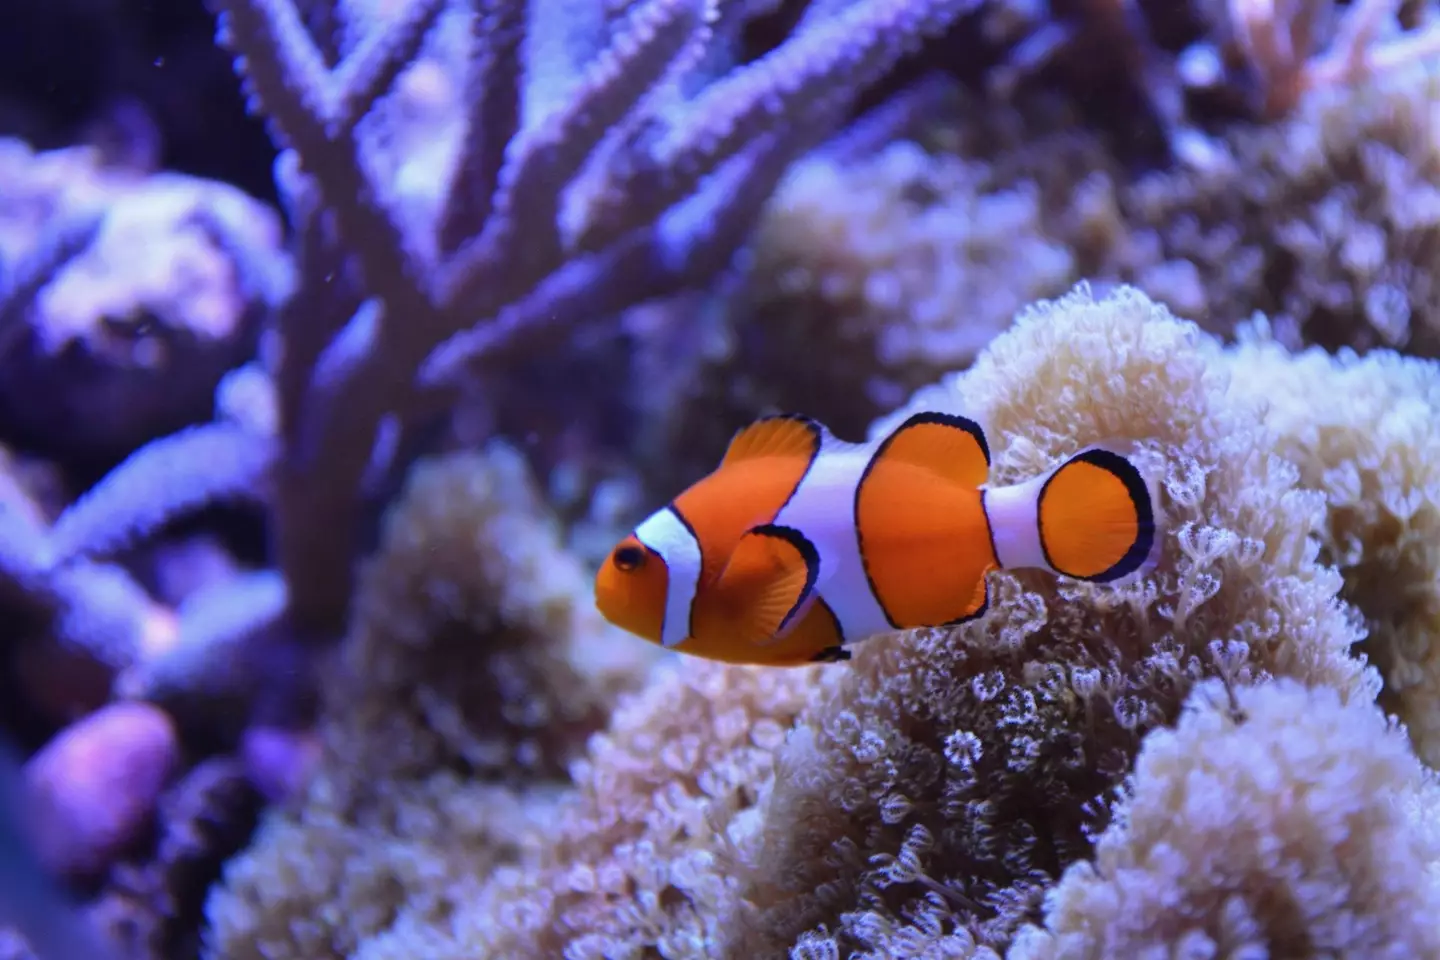 All clown fish are born male.